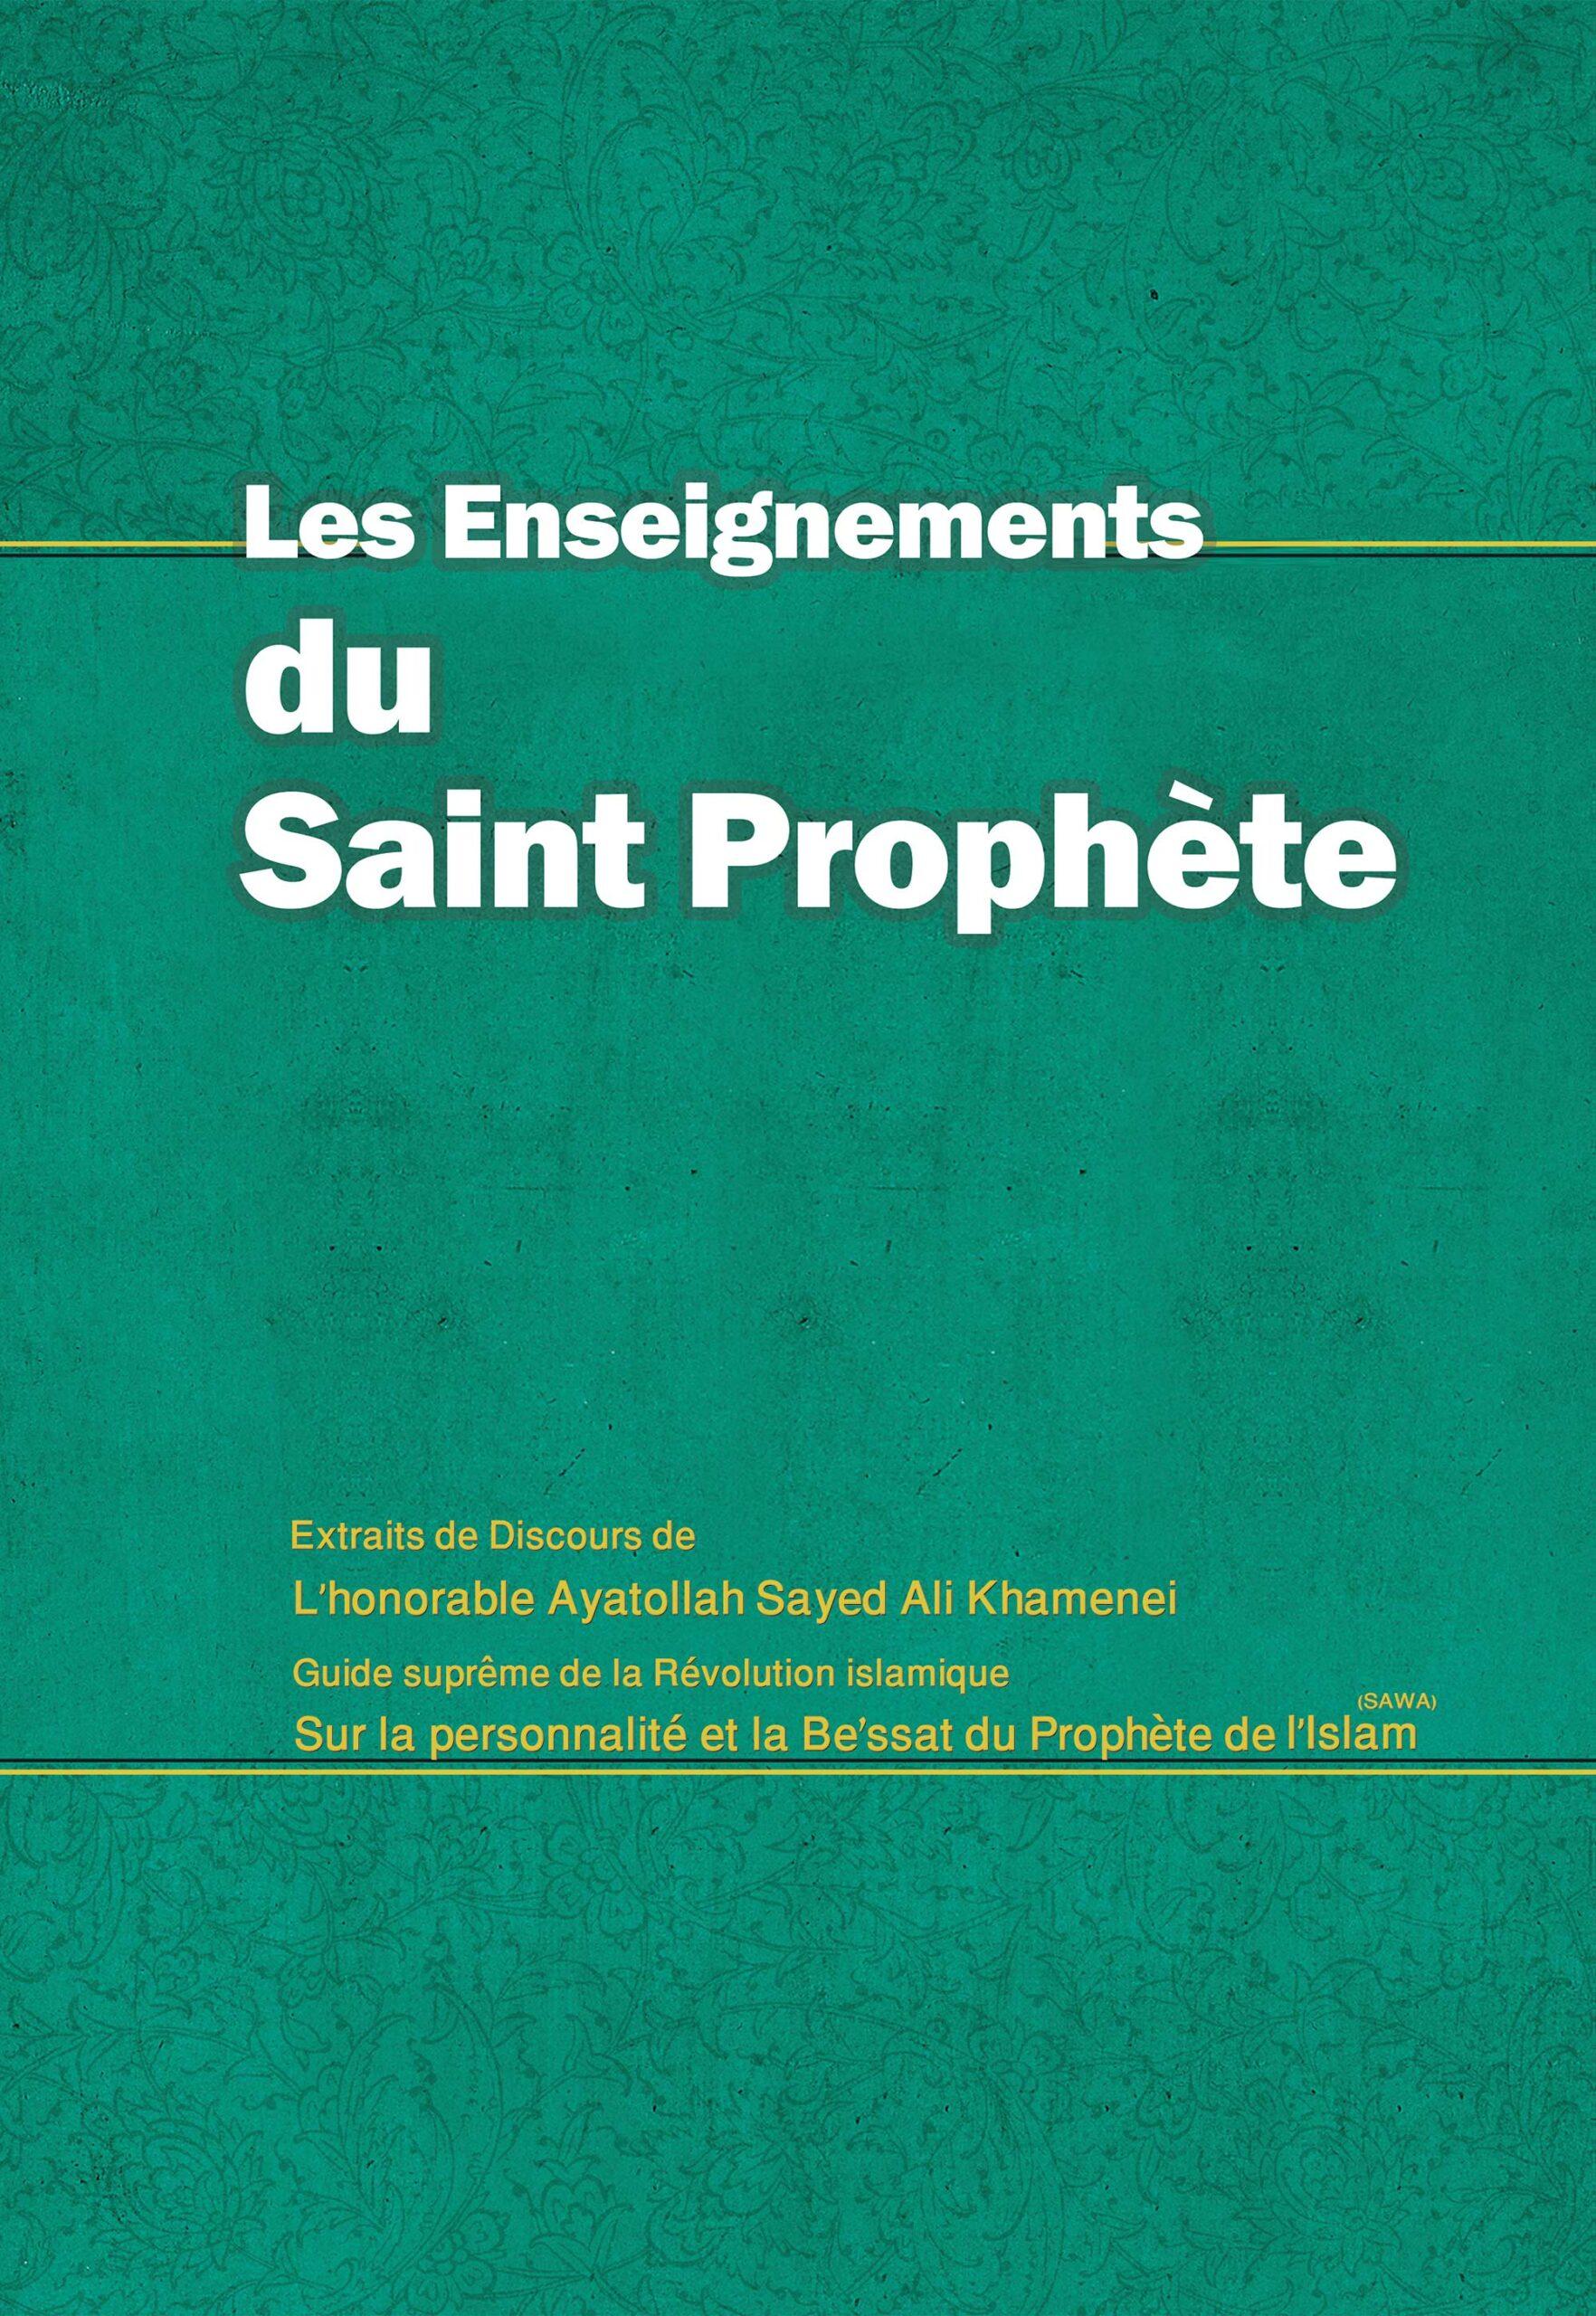 Les enseignements du Saint Prophète (Sayed Ali Khamenei)